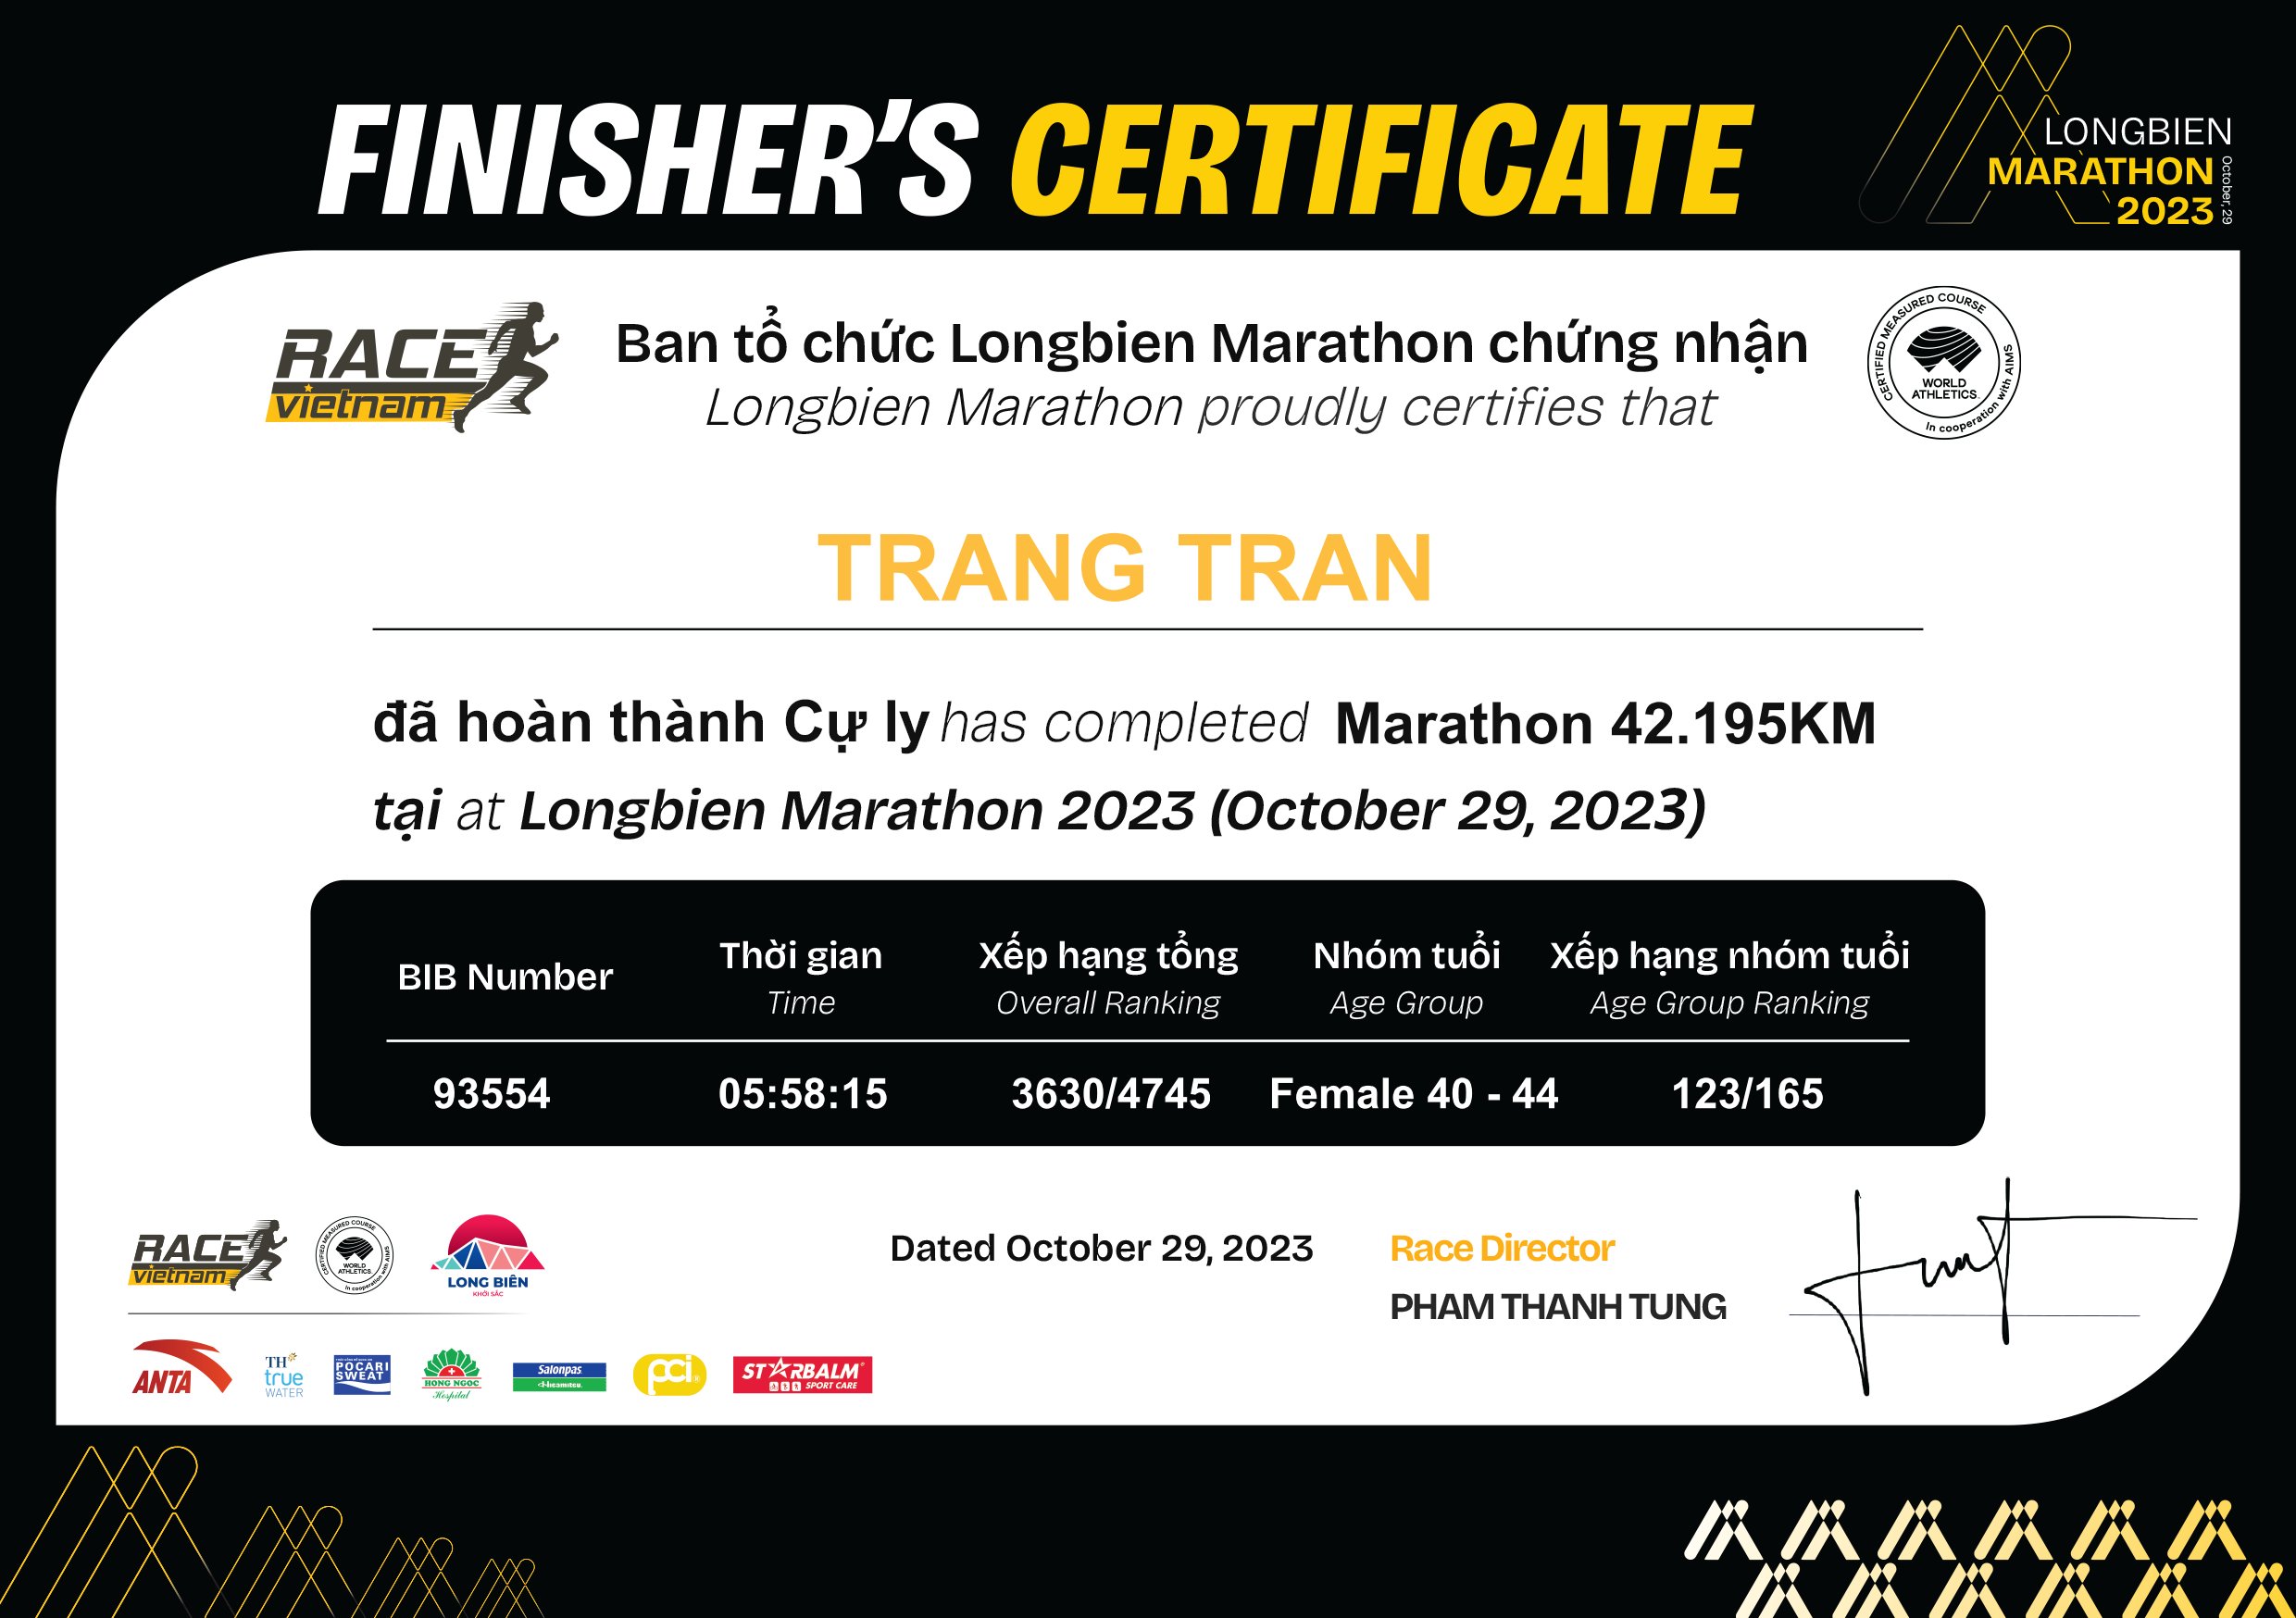 93554 - Trang Tran